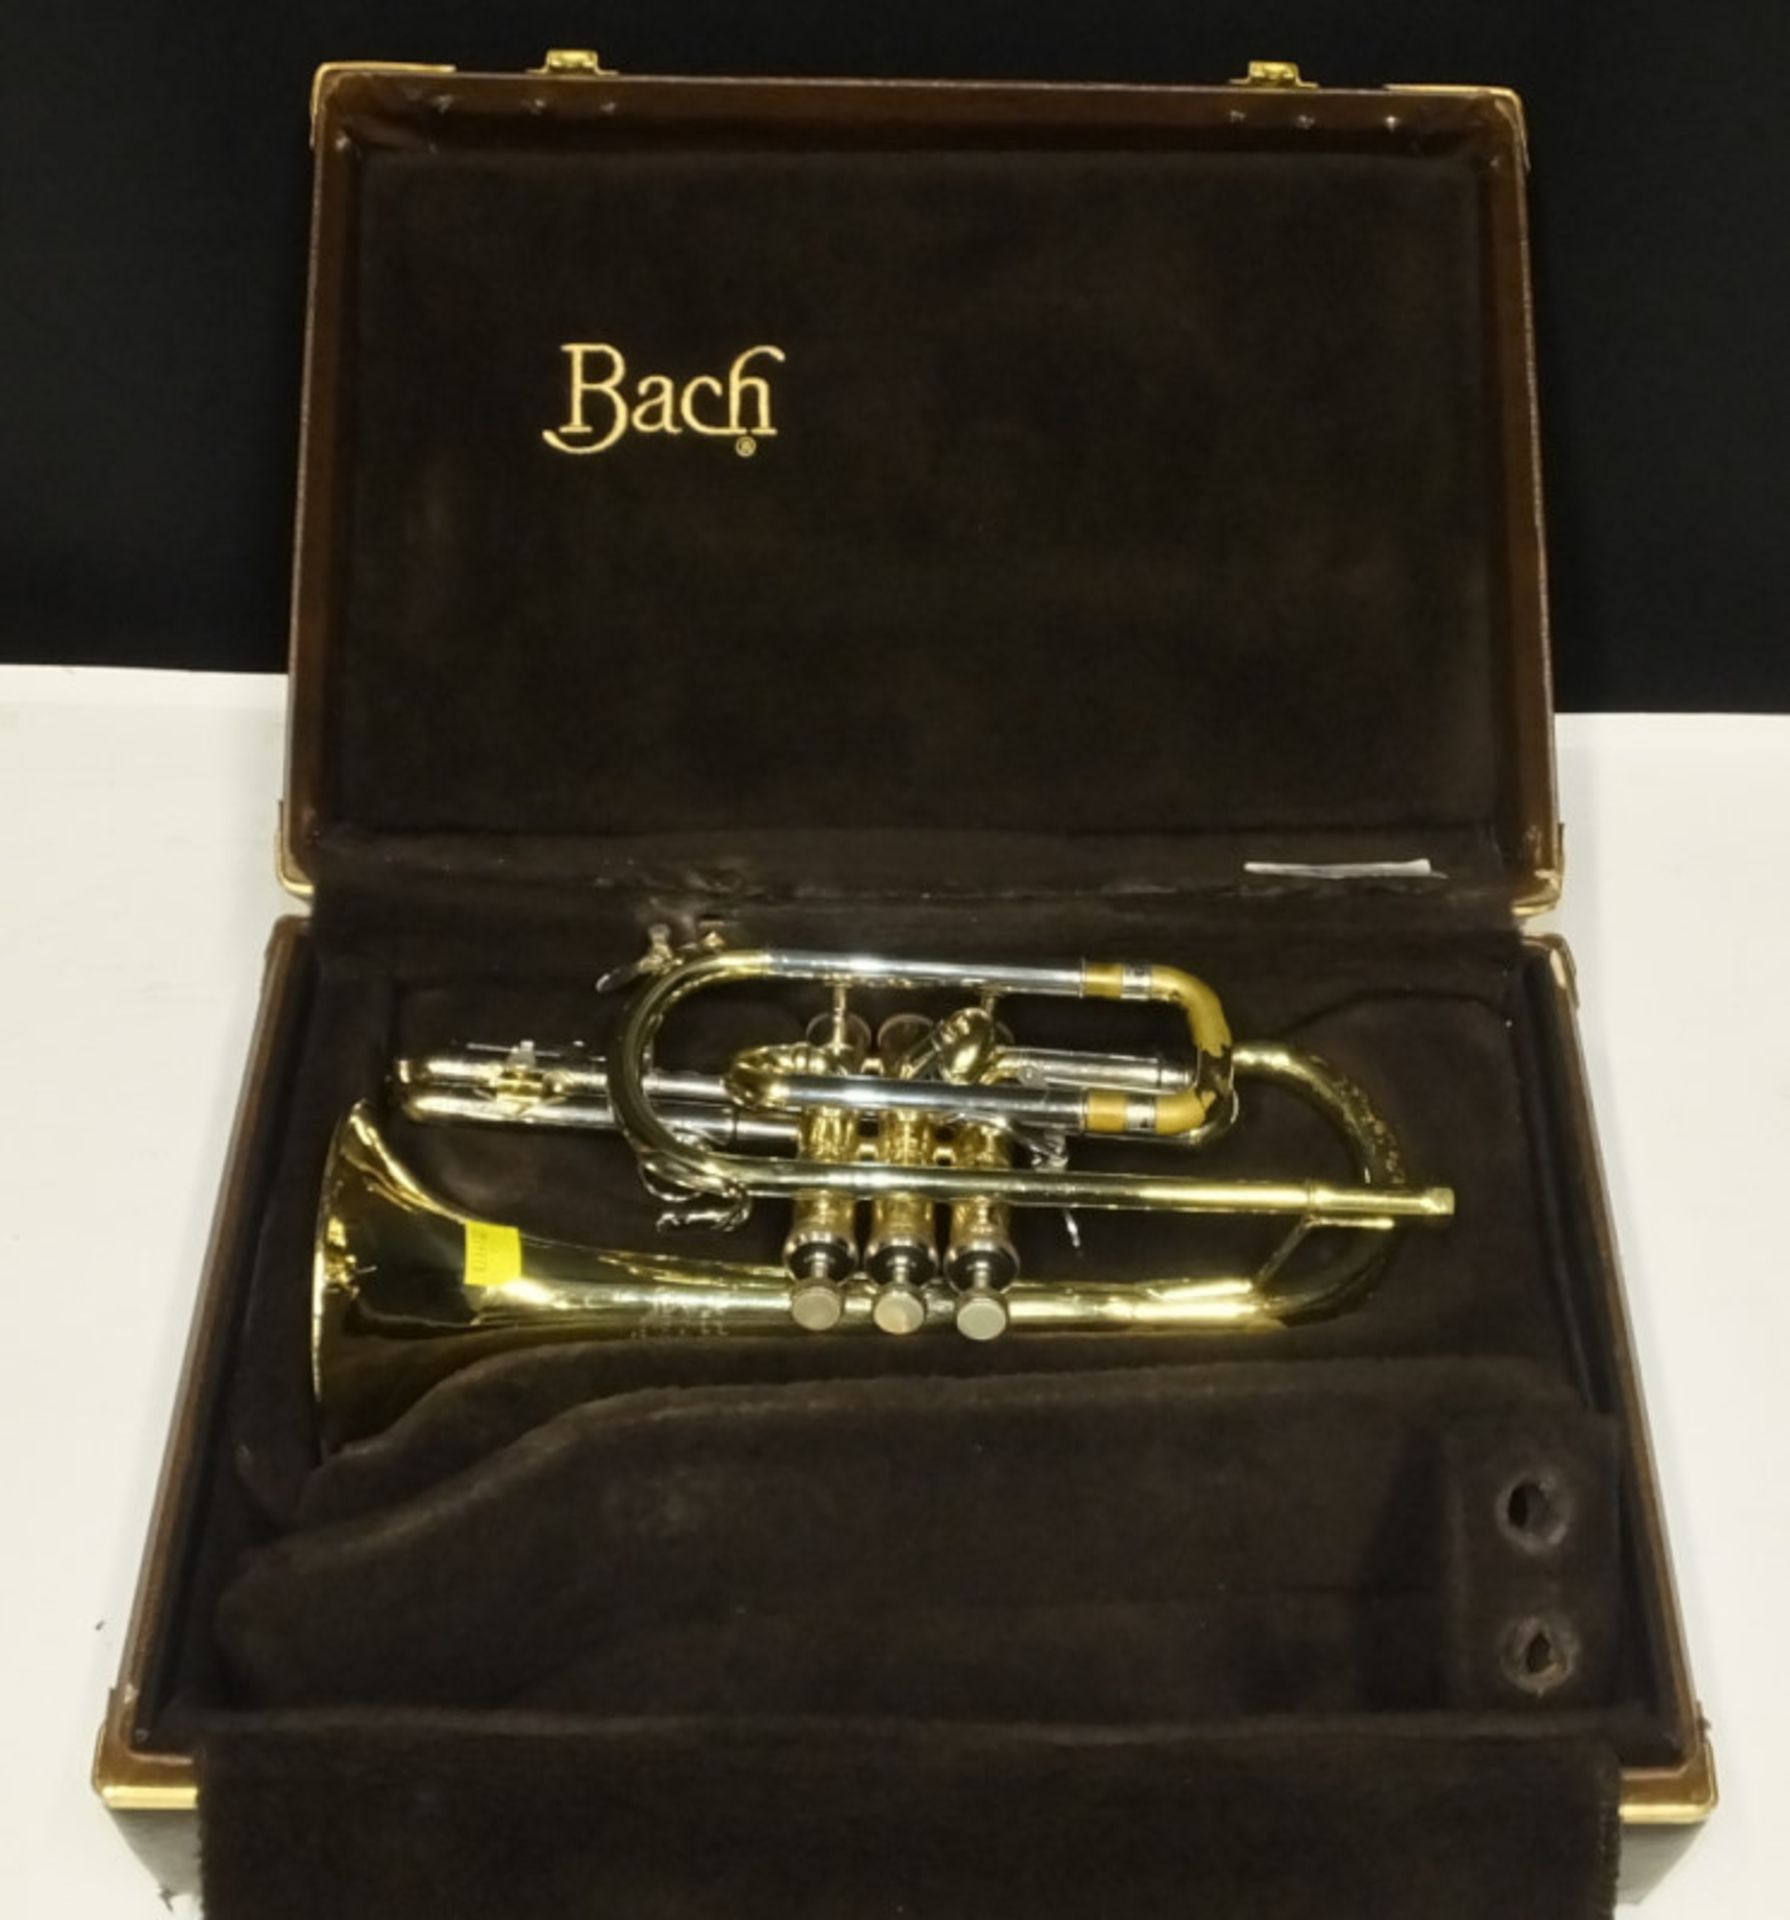 Bach Stradivarius Model 184 Cornet in case - Serial No. 630532 - Please check photos car